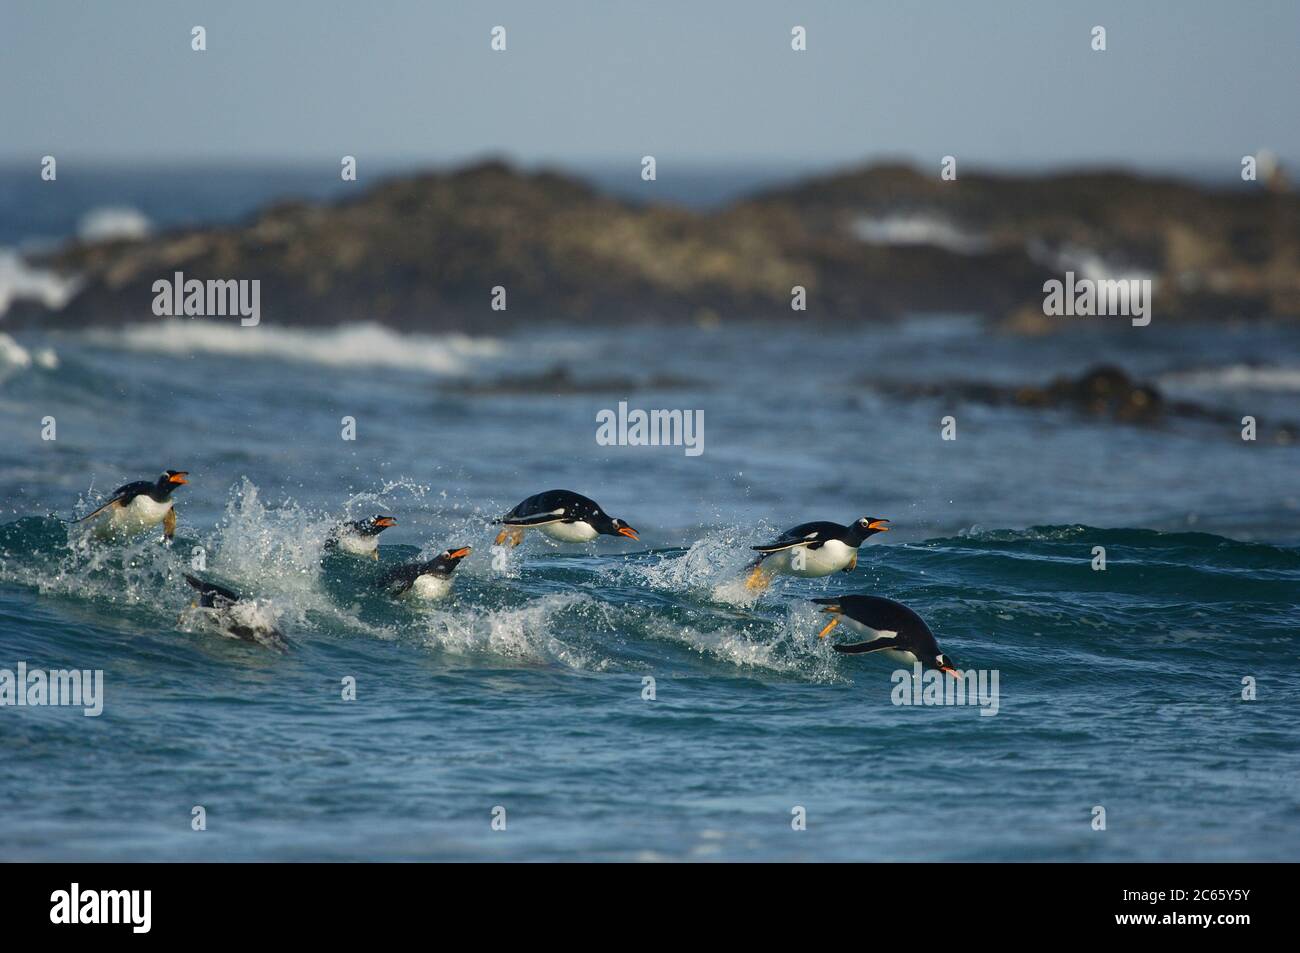 Avec une vitesse de nage allant jusqu'à 30 km/h, le Penguin Gentoo (Pygoscelis papouasie) est le fastes parmi les pingouins. Le porpoising est un moyen très efficace de voyager à grande vitesse car l'animal tire profit de la résistance plus faible dans l'air que sous l'eau et est capable de respirer avec le bec ouvert. Banque D'Images